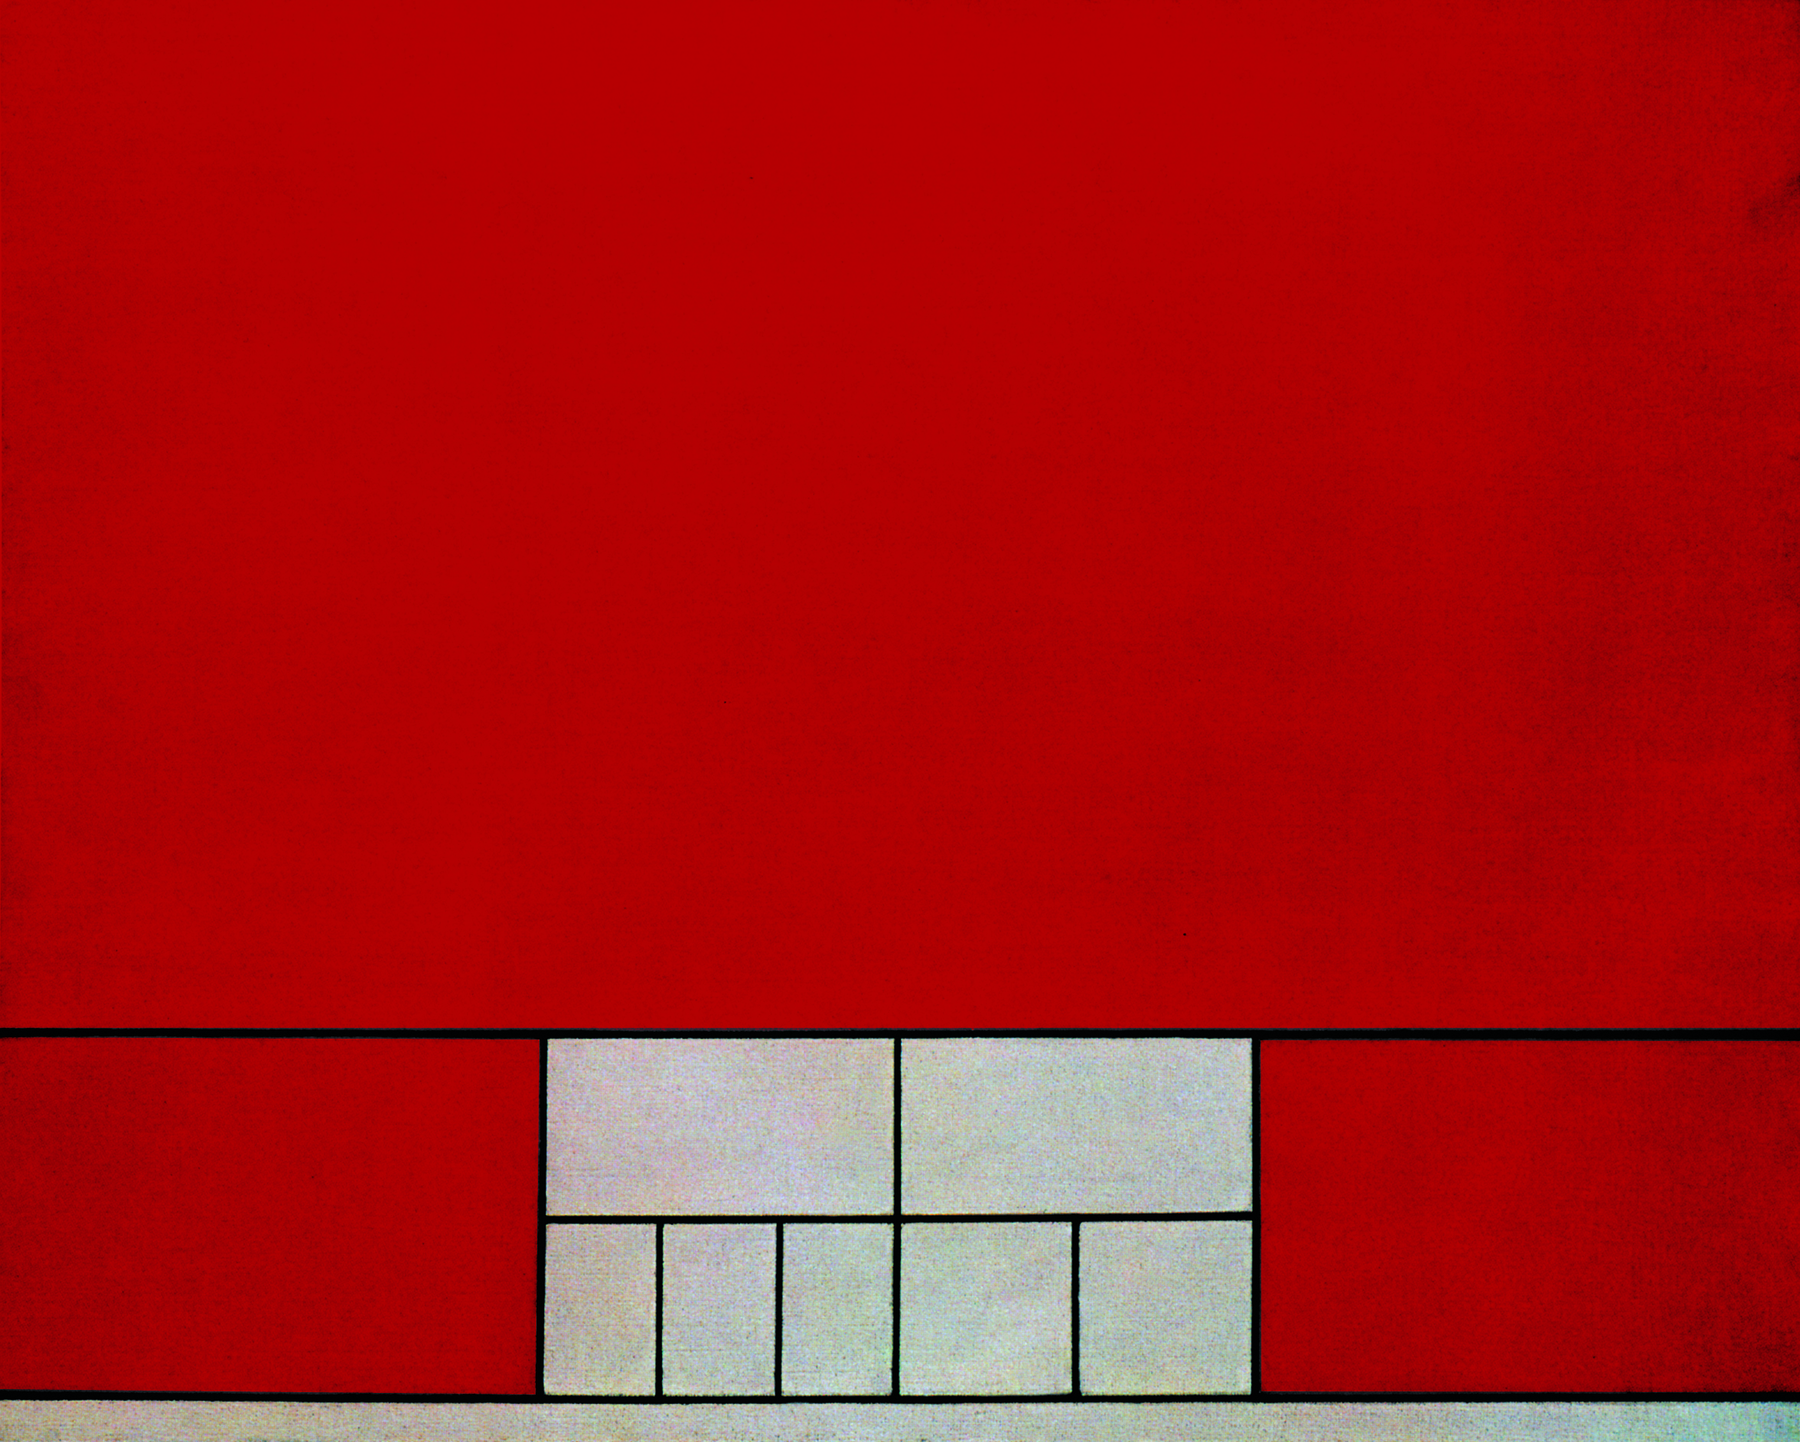 Pintura. Retângulo dividido em outros retângulos menores. Um retângulo em vermelho na parte superior. Na parte inferior, dois retângulos em vermelho nos lados, e entre eles, dois retângulos em cinza, divididos em 4 outros retângulos cada um.